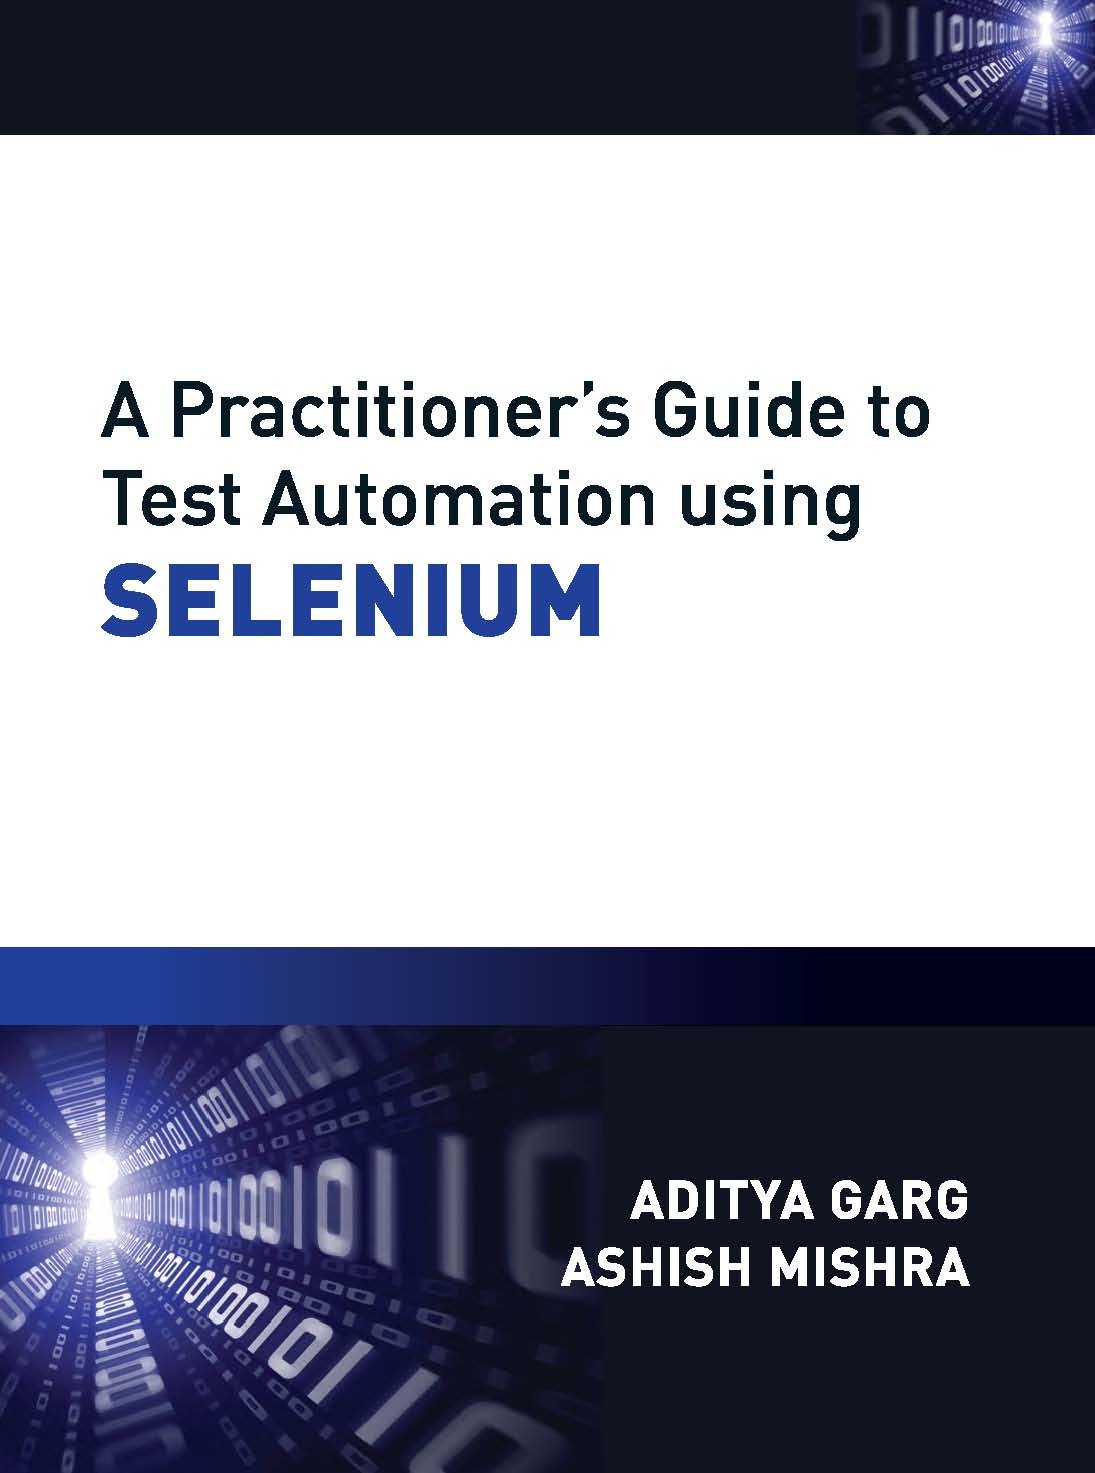 《使用SELENIUM进行自动化测试的从业人员指南》